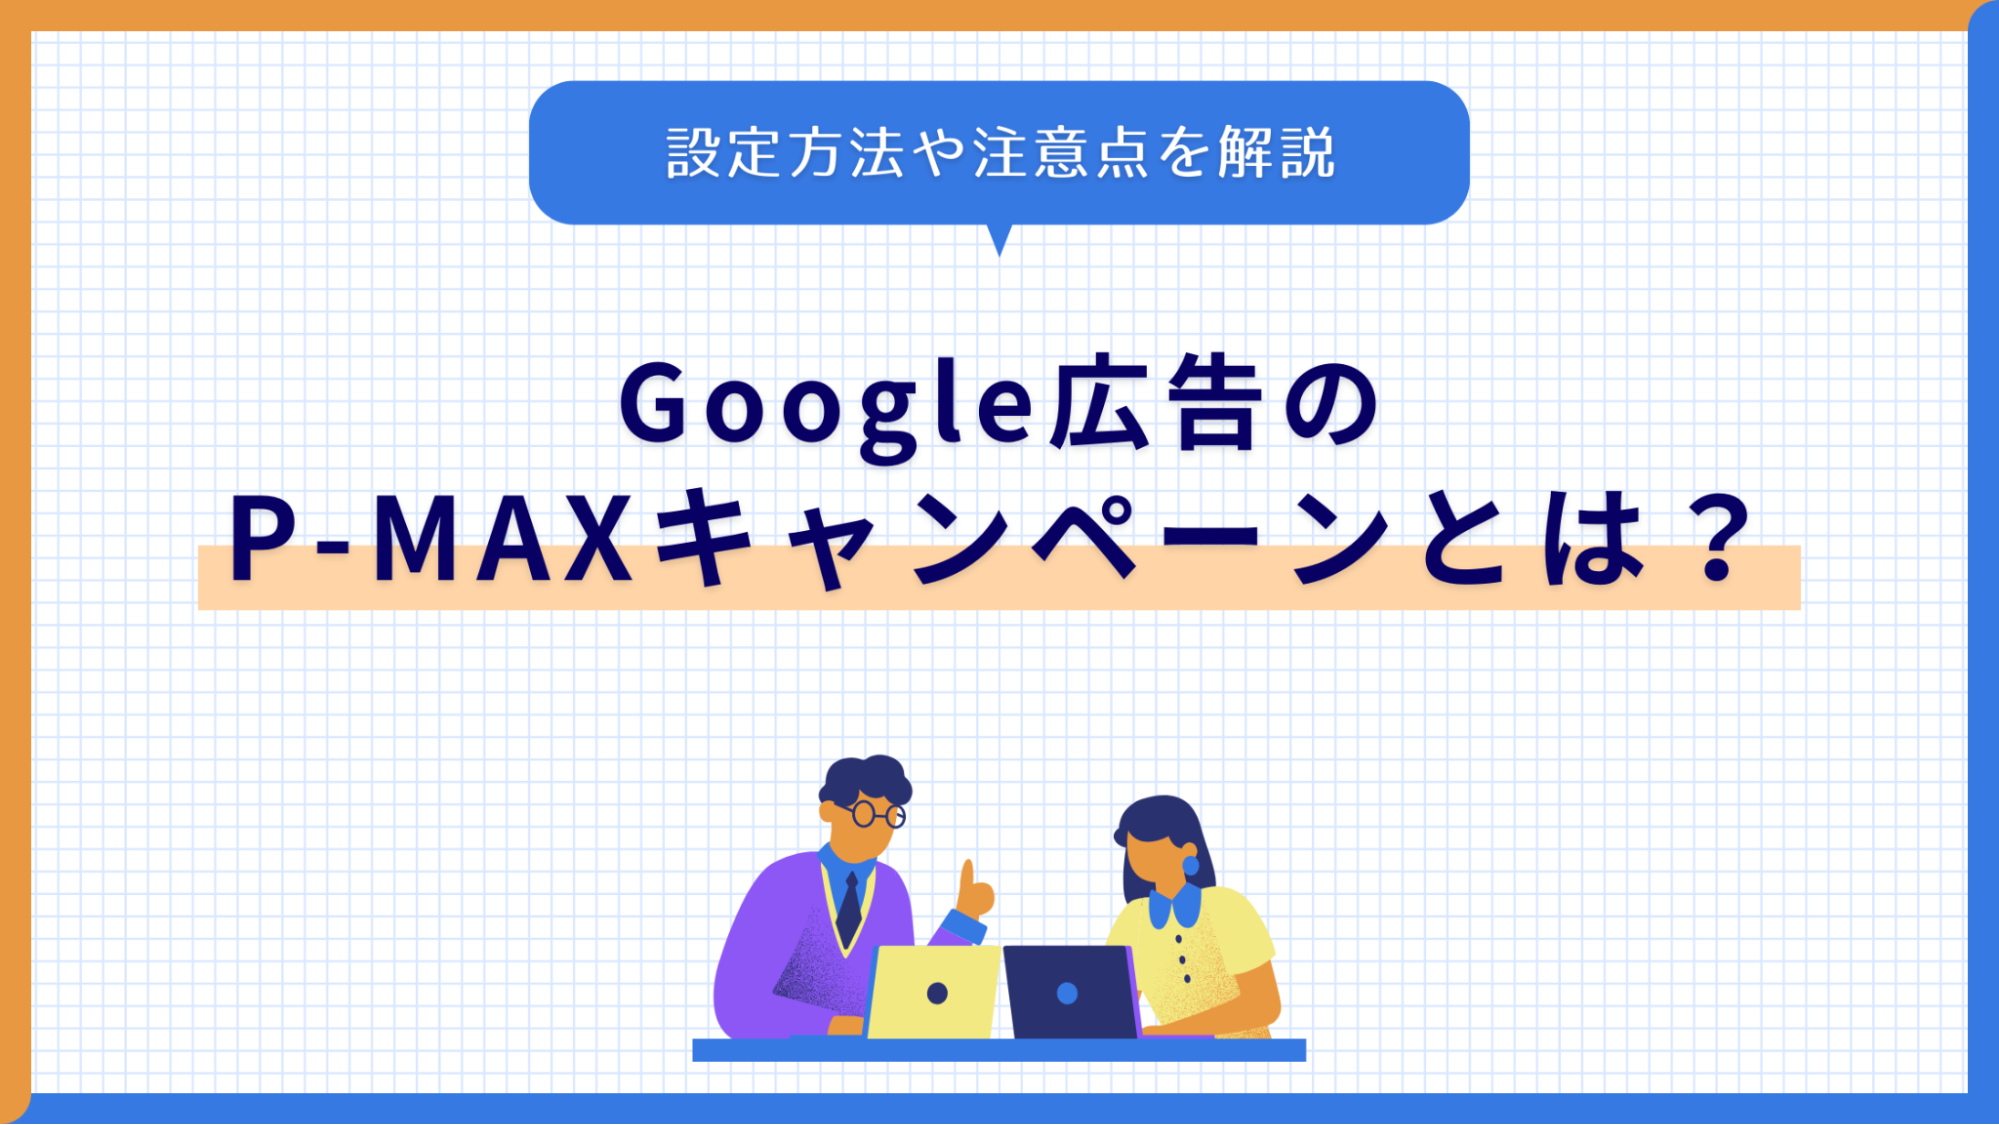 google 広告 p max アイキャッチ